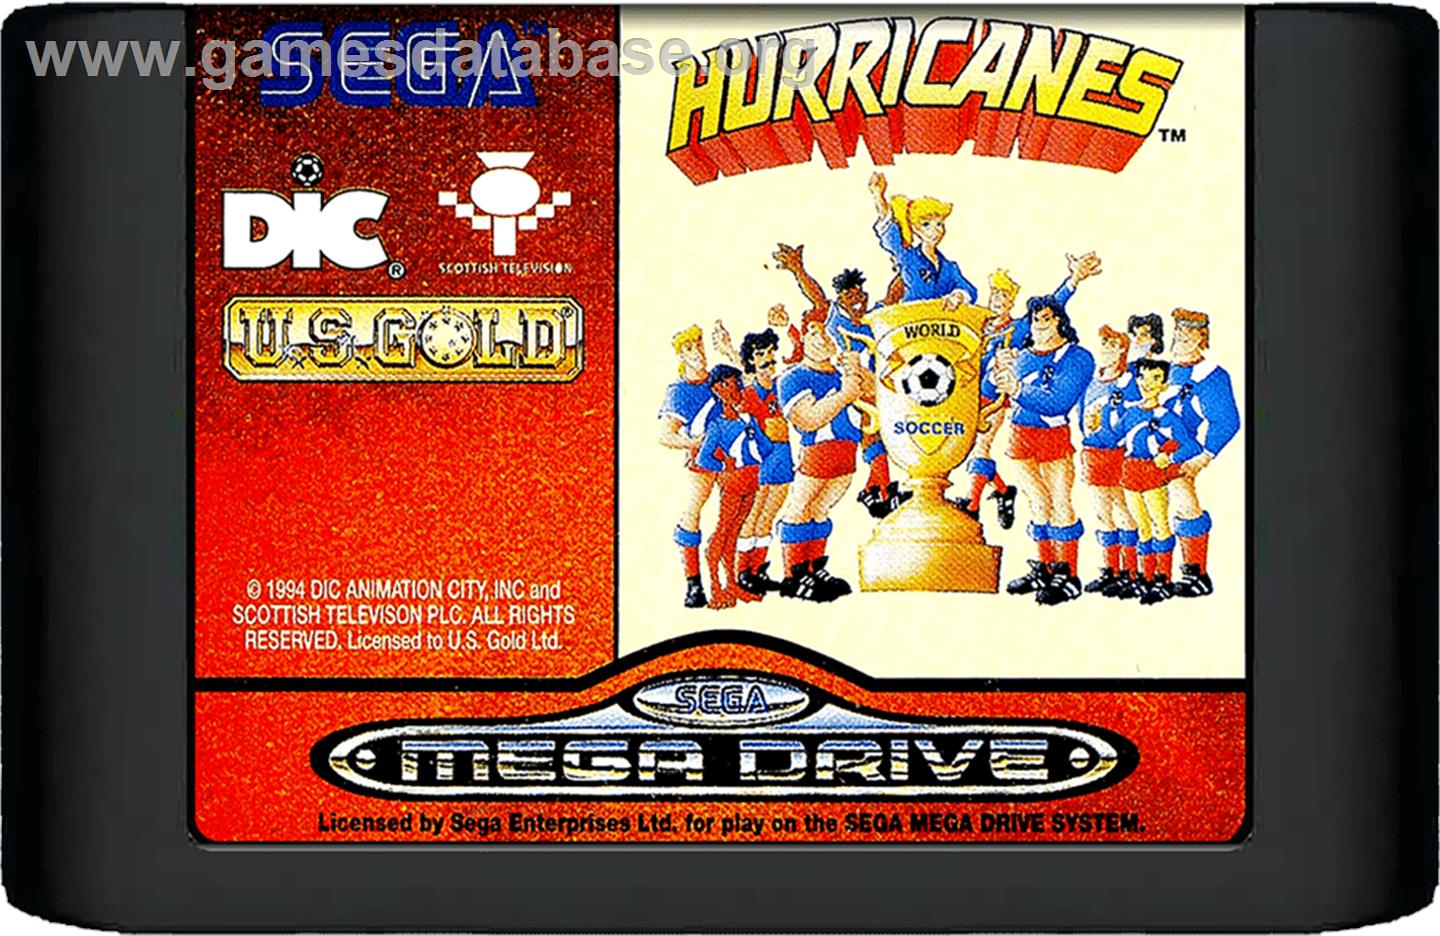 Hurricanes, The - Sega Genesis - Artwork - Cartridge